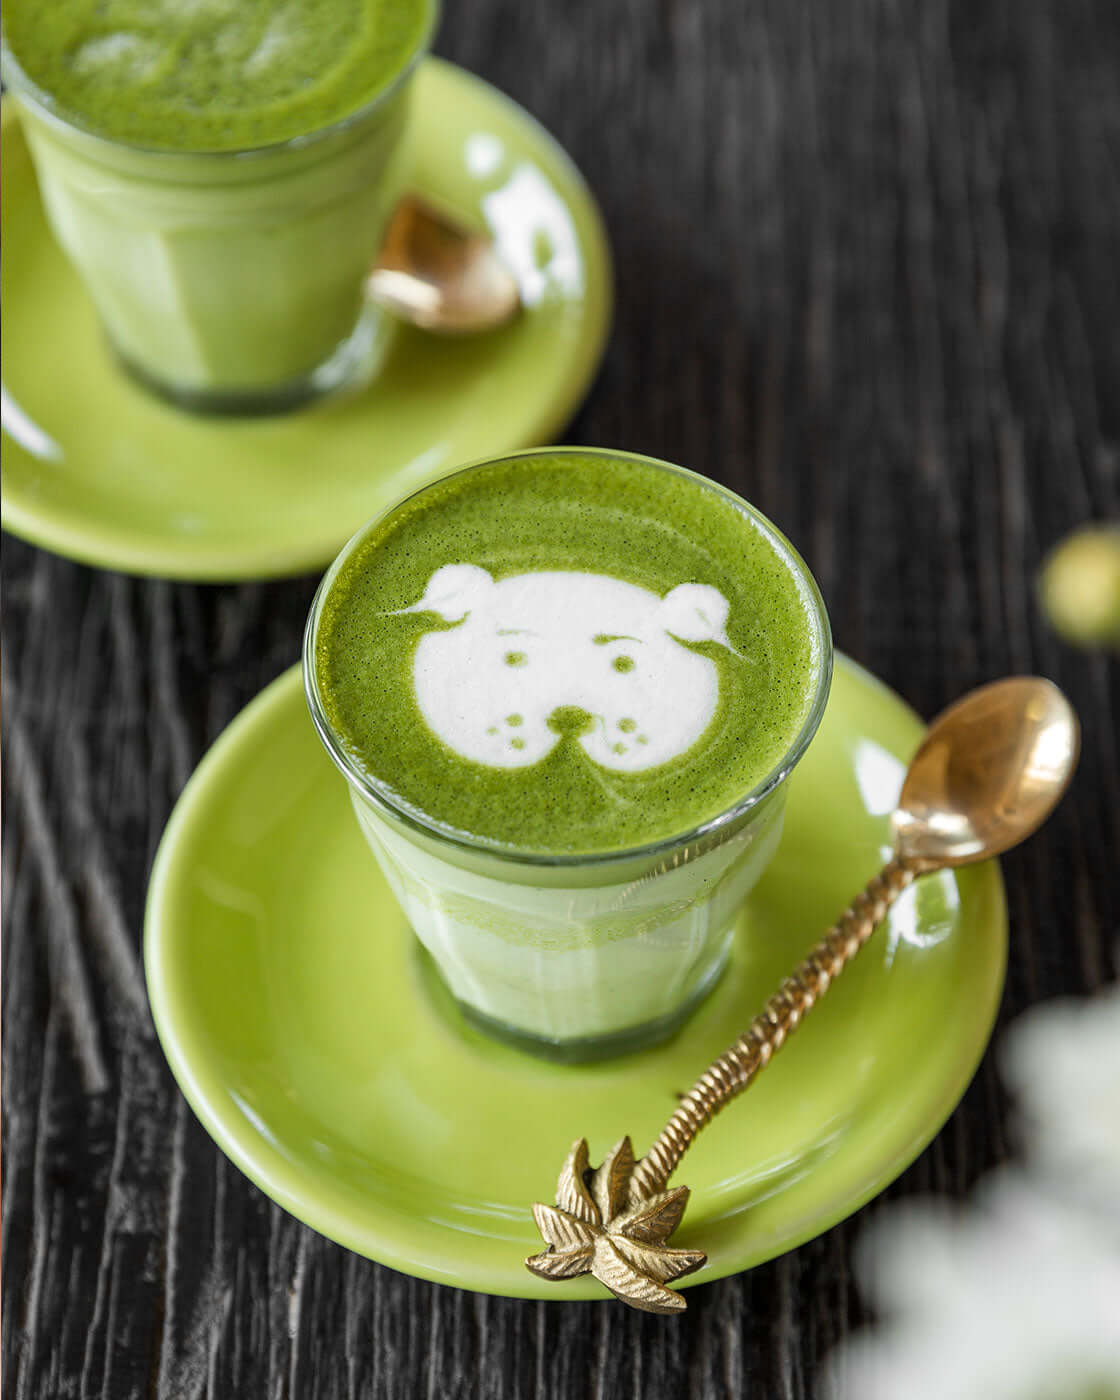 Matcha latte made with Matchakin Eco Ceremonial Matcha